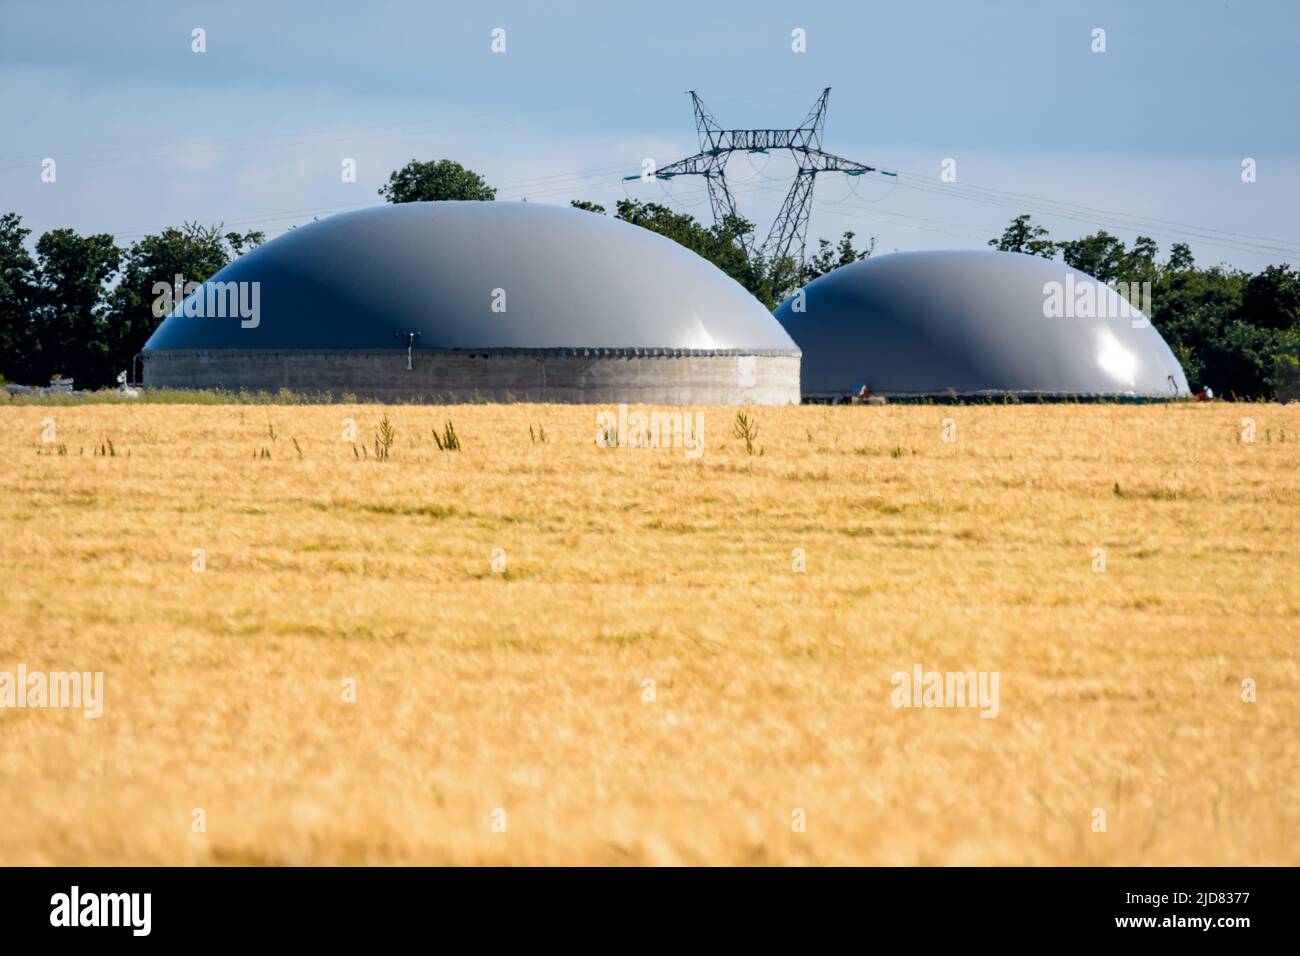 Vista general de una planta de biogás con dos digestores en un campo de trigo y un pilón eléctrico en la distancia en el campo. Foto de stock